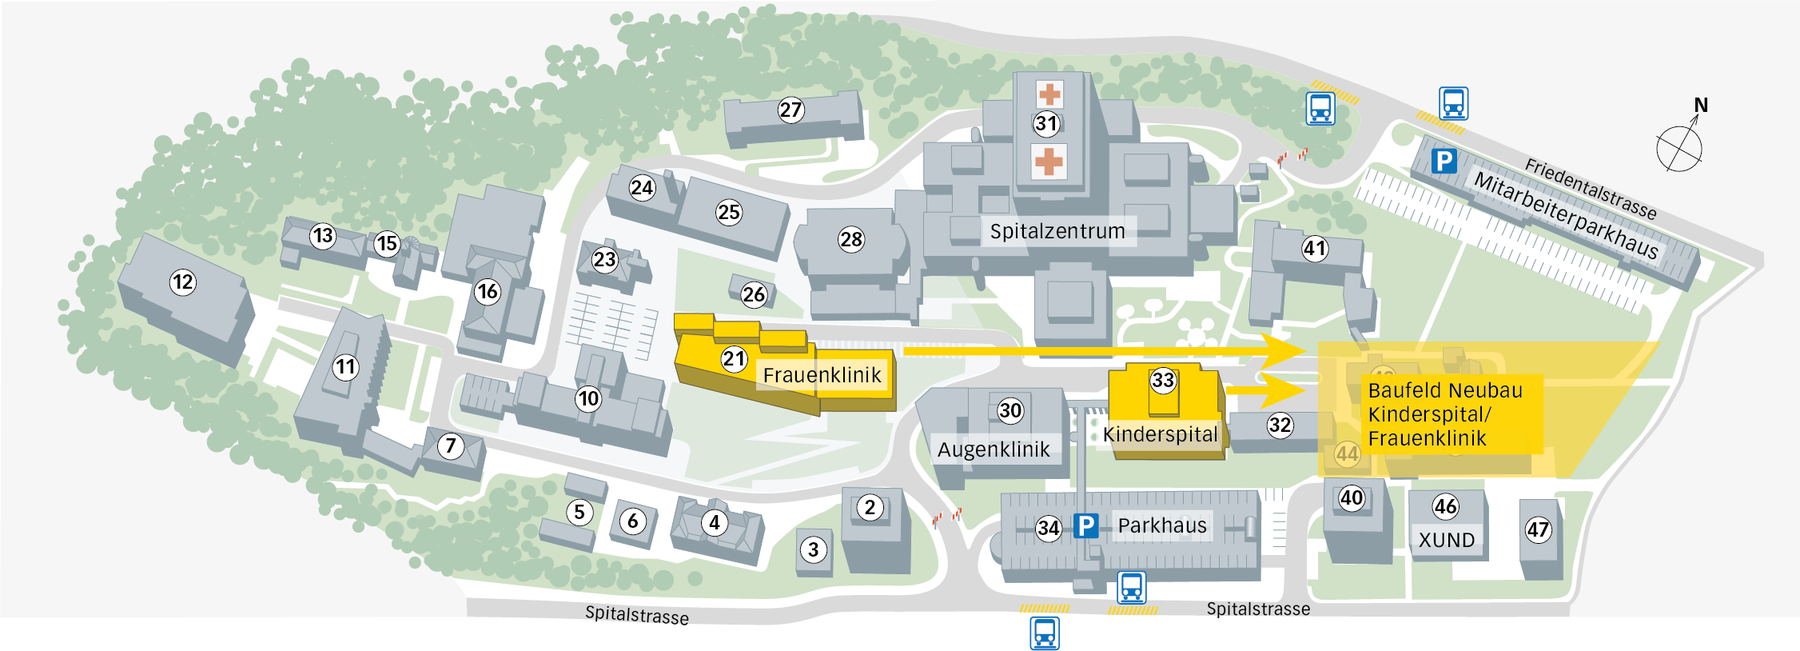 Situationsplan: Der geplante Standorte des Kinderspitals und der Frauenklinik